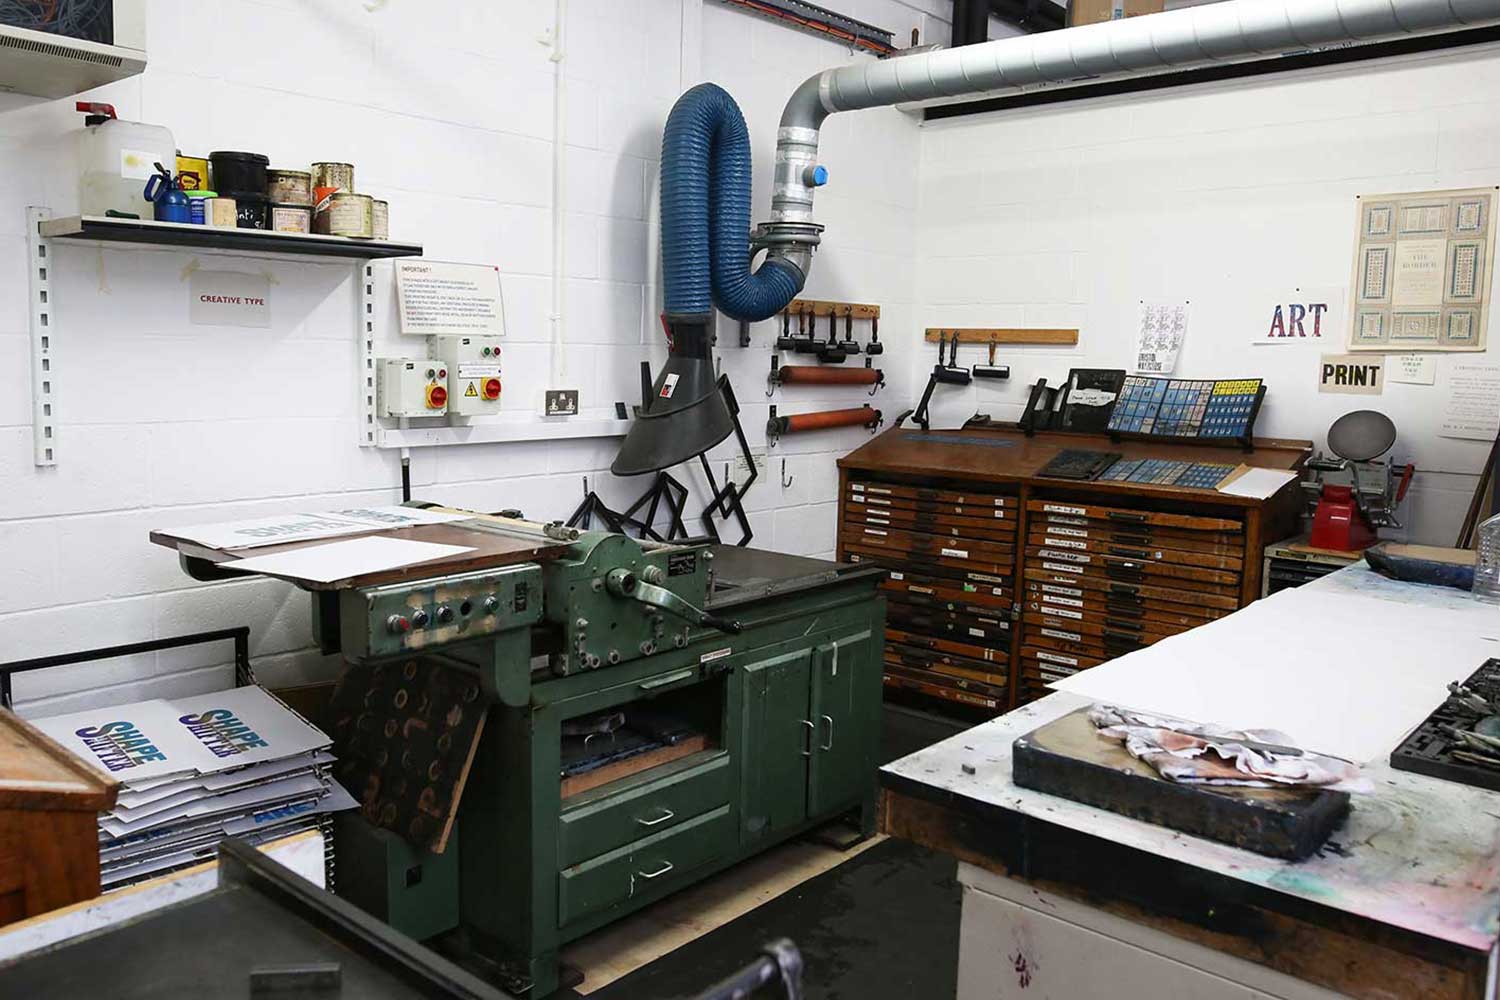 The printing workshop at Locksbrook